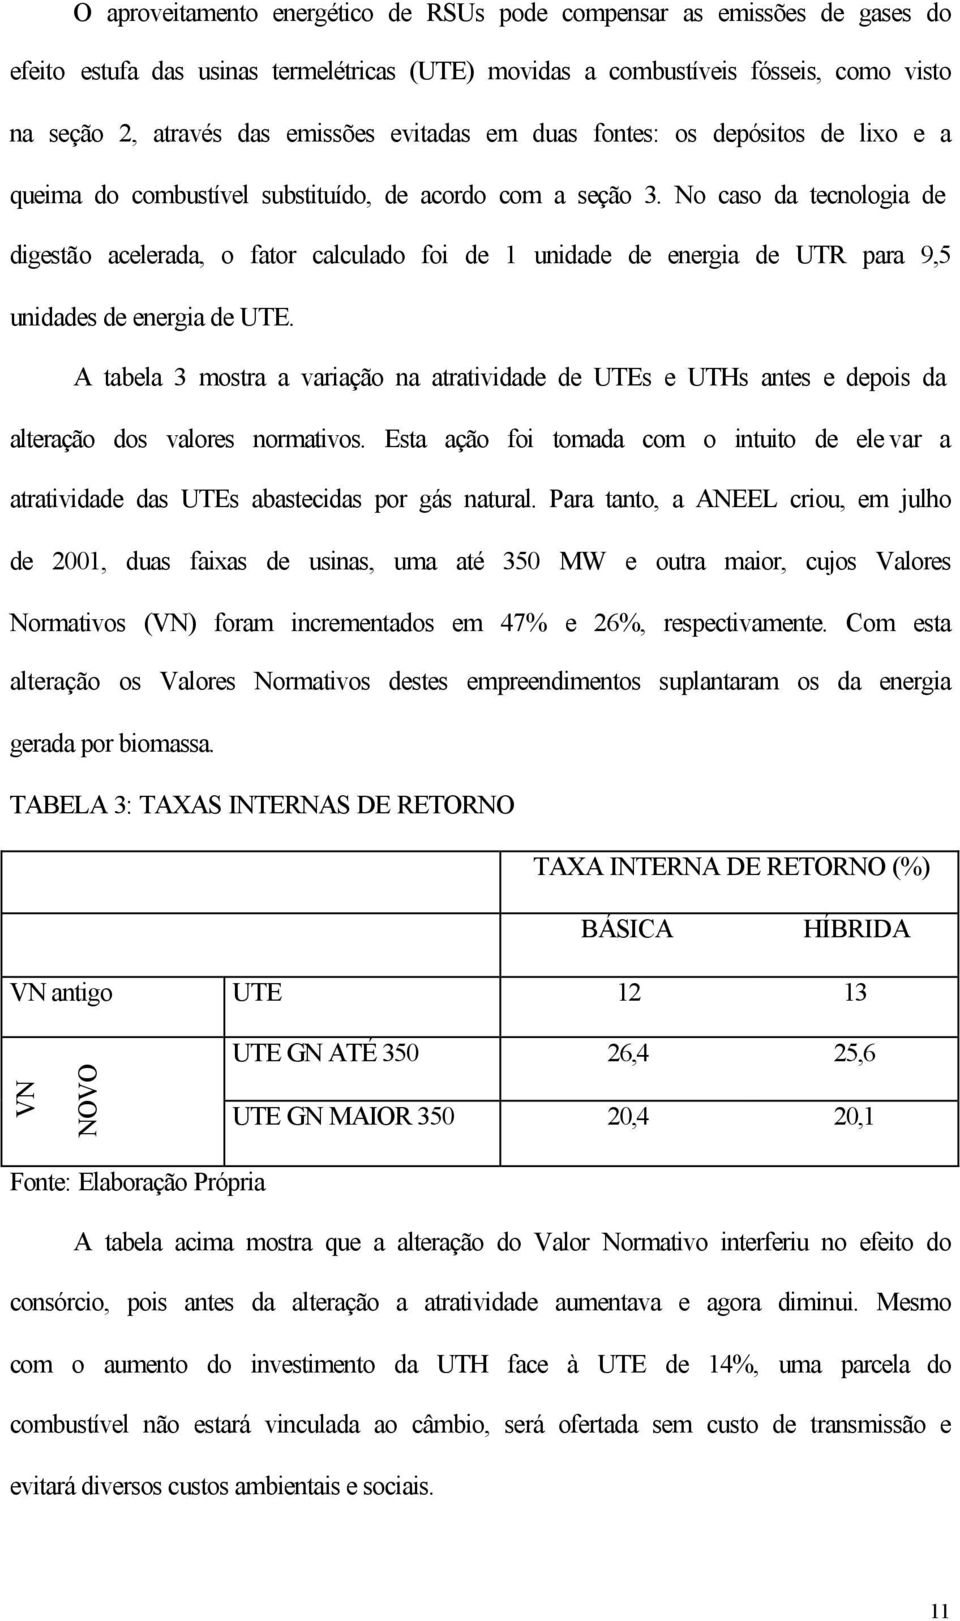 No caso da tecnologia de digestão acelerada, o fator calculado foi de 1 unidade de energia de UTR para 9,5 unidades de energia de UTE.